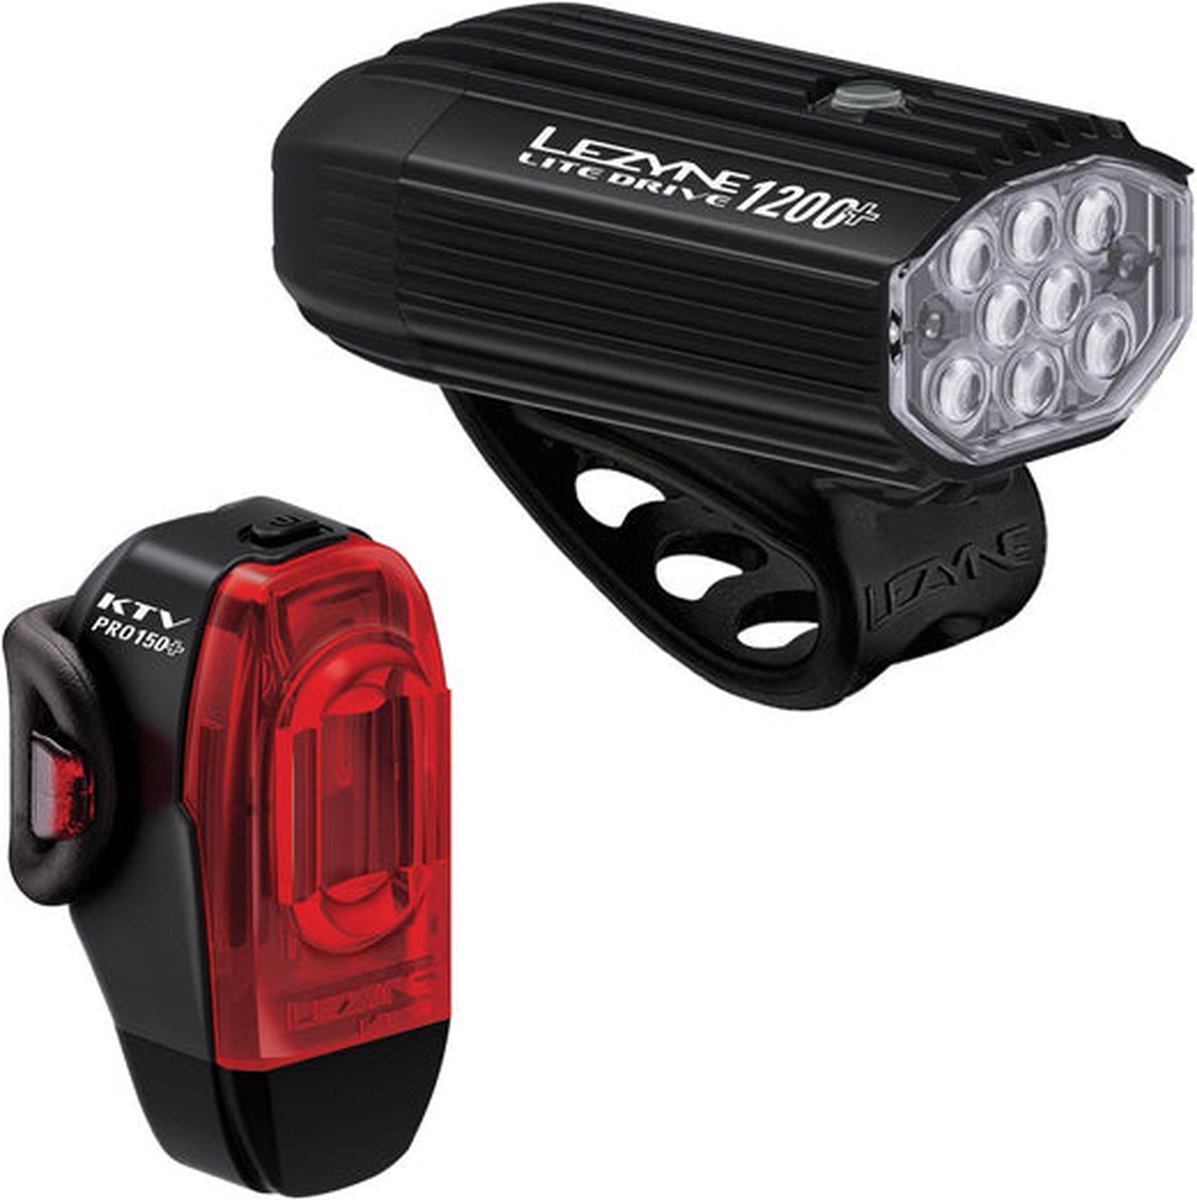 Lezyne Lite Drive 1200 + KTV Drive Pro+ - Fietsverlichting set - Fietslampen voor en achter - Fietslicht - Waterbestendig - 1200 lumen - Zwart